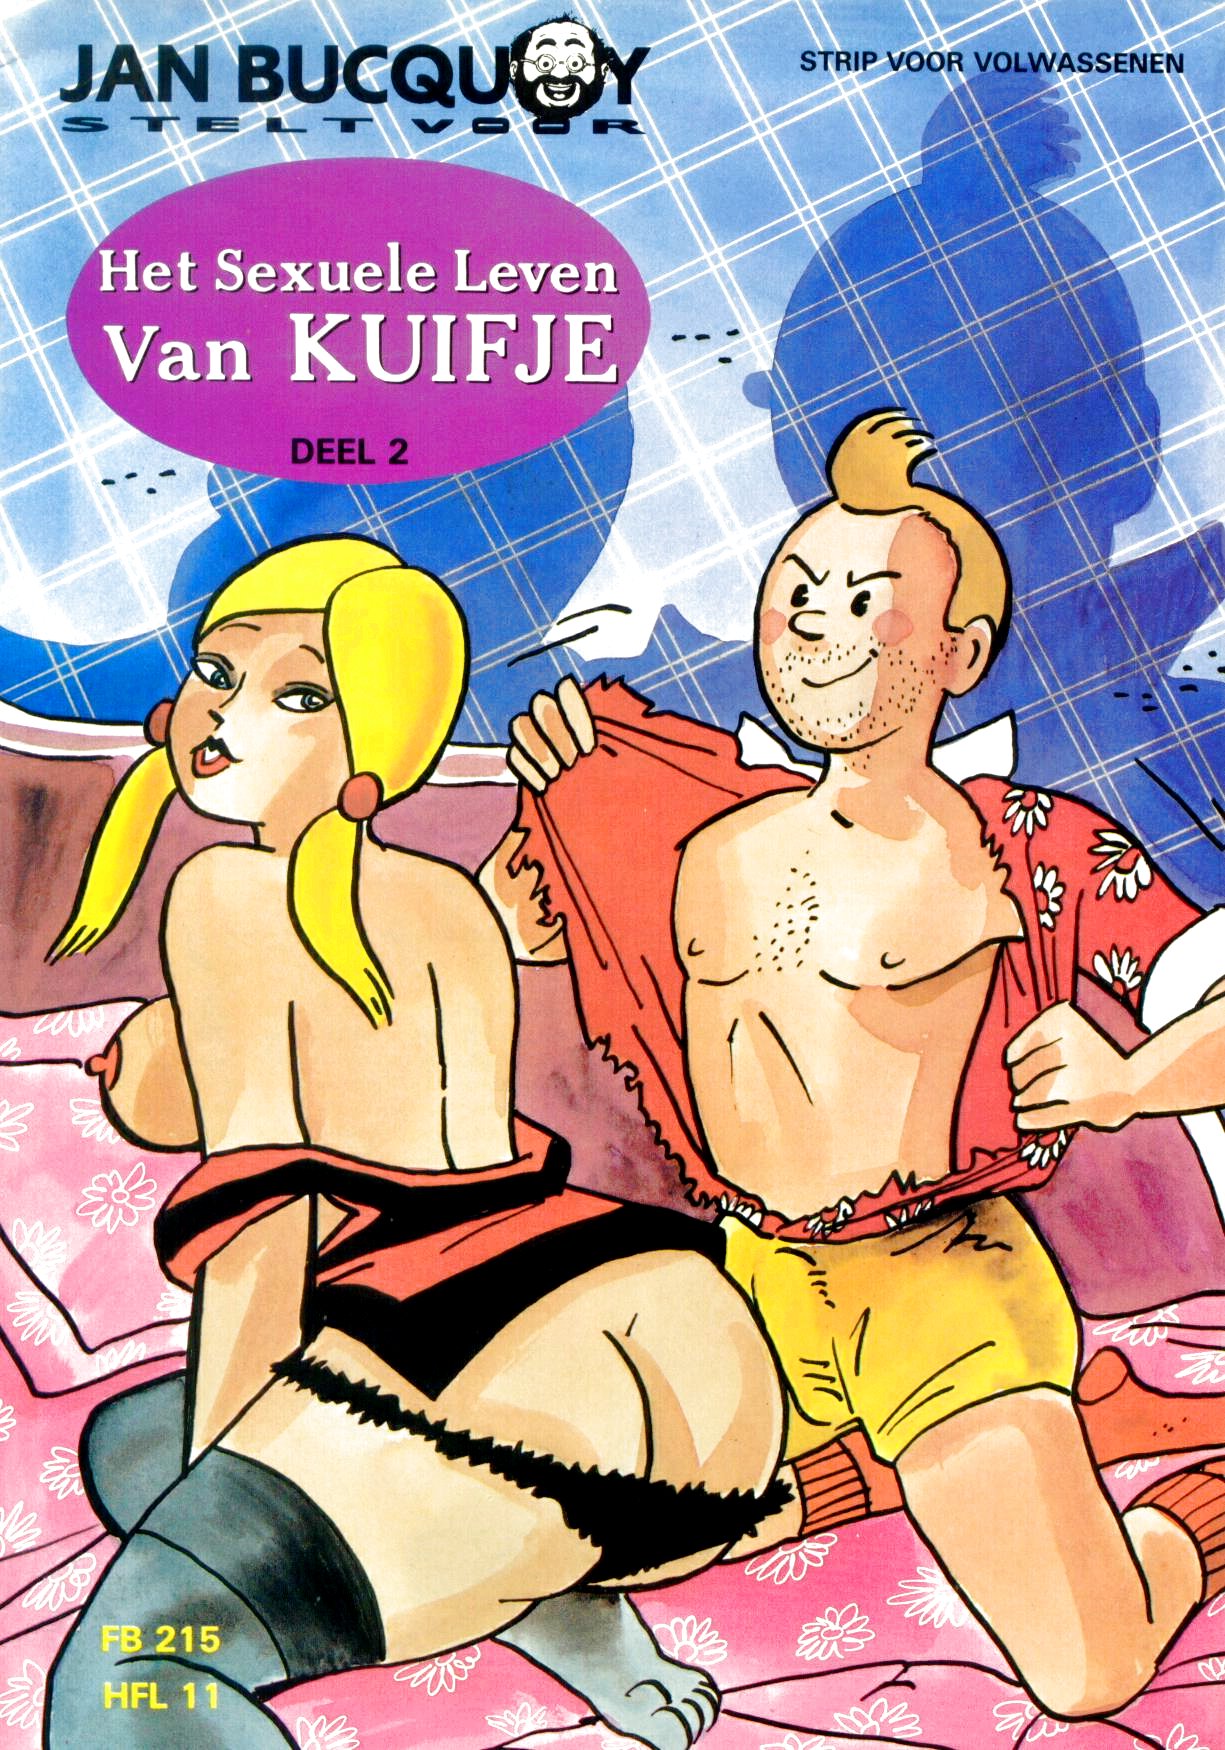 Adventure Of Tintin 3d Porn - The Adventures Of Tintin Porn Comics Â» Hentai Porns - Manga And Porncomics  Xxx Hentai Comics